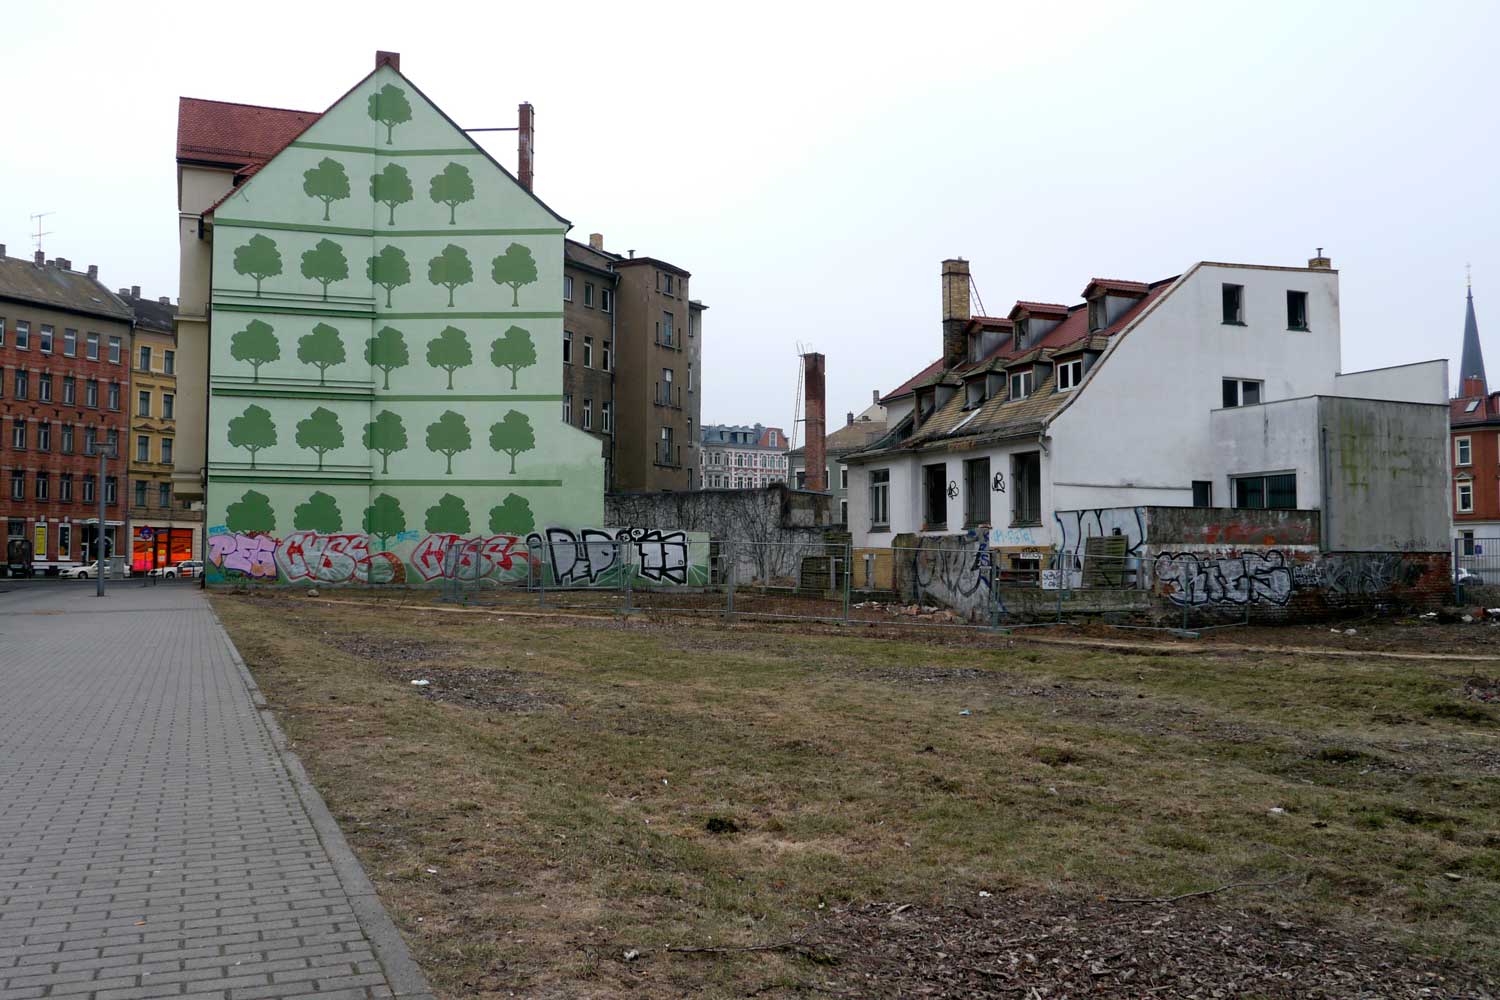 Häuser am Lindenauer Markt